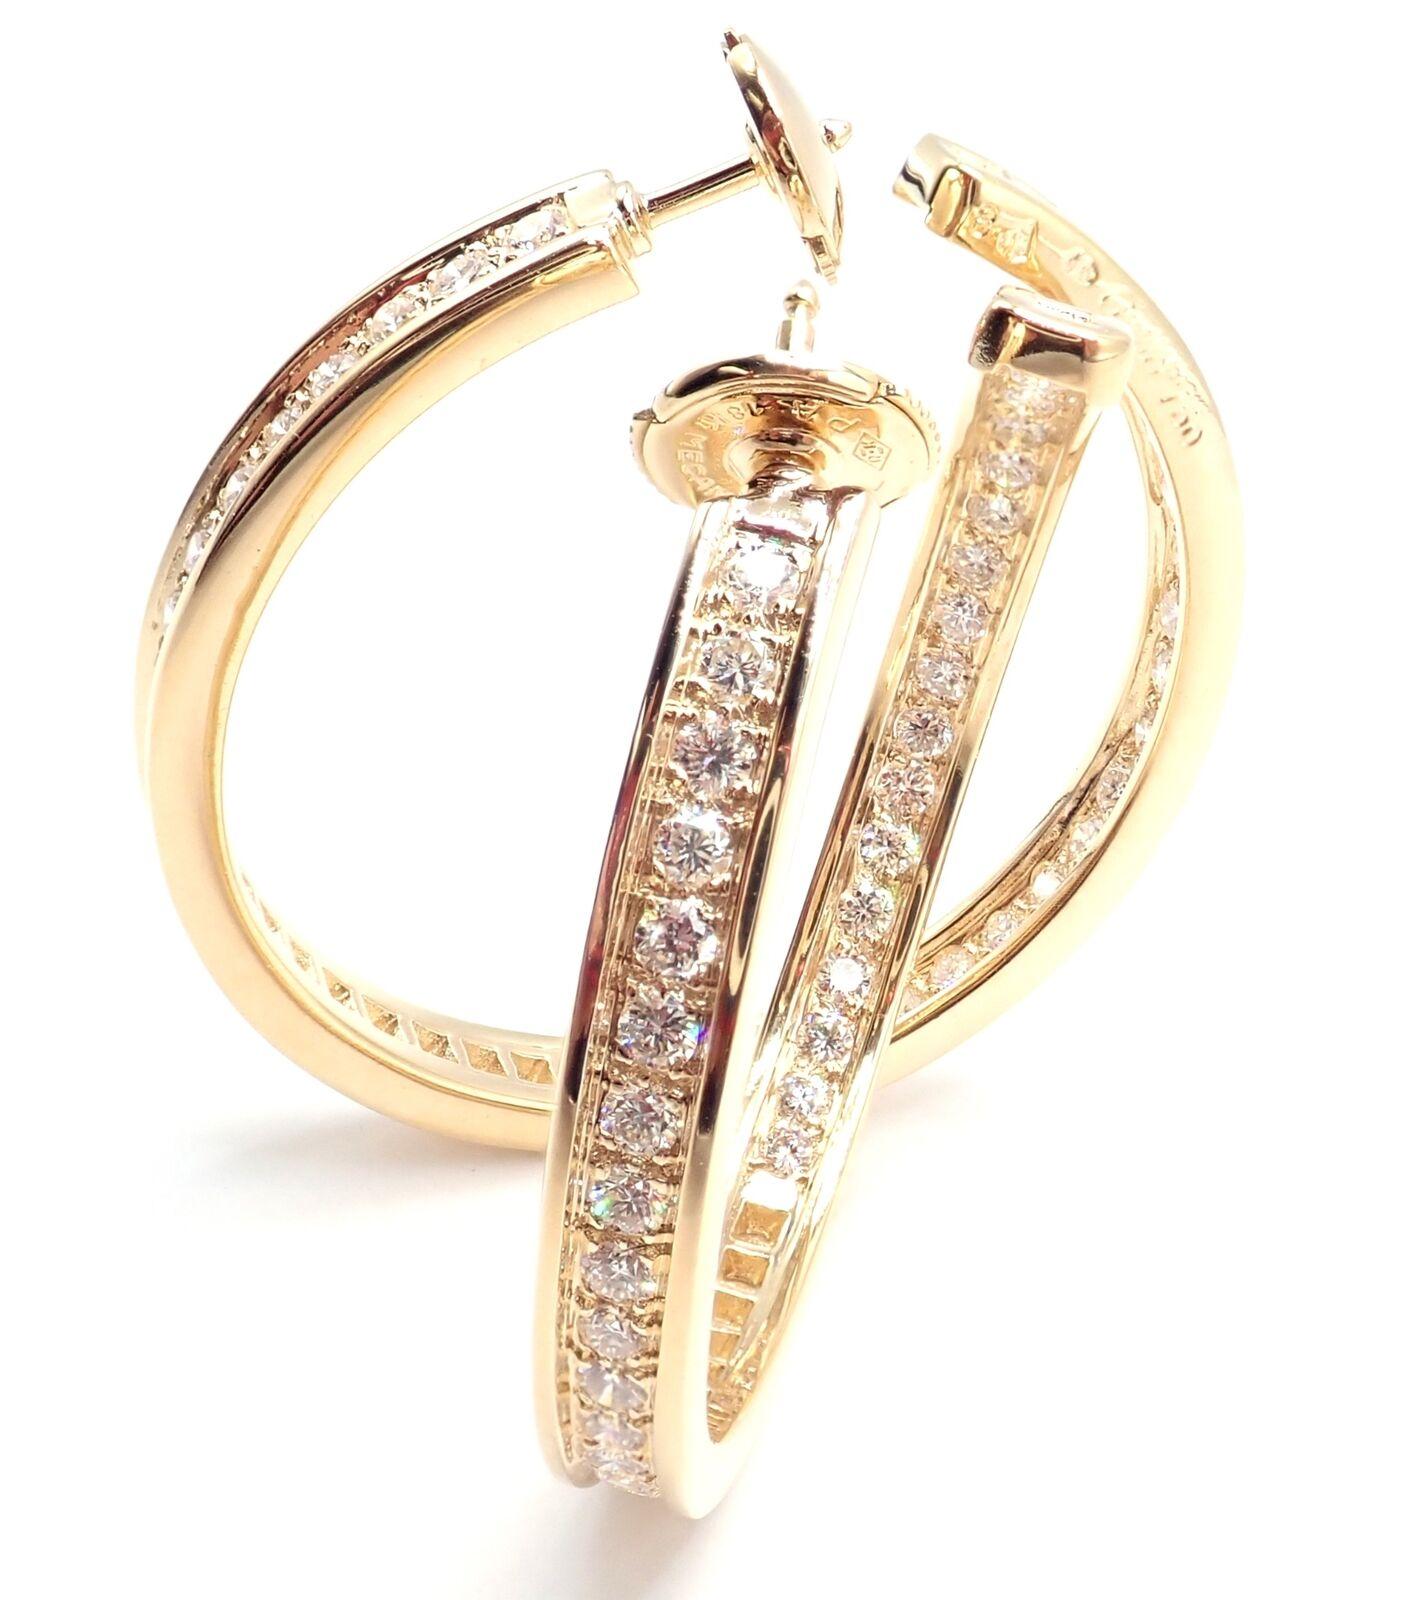 18k Gelbgold Diamond Large Creolen von Cartier. 
Mit 90 runden Diamanten im Brillantschliff, Gesamtgewicht ca. 2,94ct. 
Diamanten Reinheit VS1, Farbe E
Diese Ohrringe werden mit einer Cartier-Box geliefert.
****Ohrringe sind für gepiercte Ohren